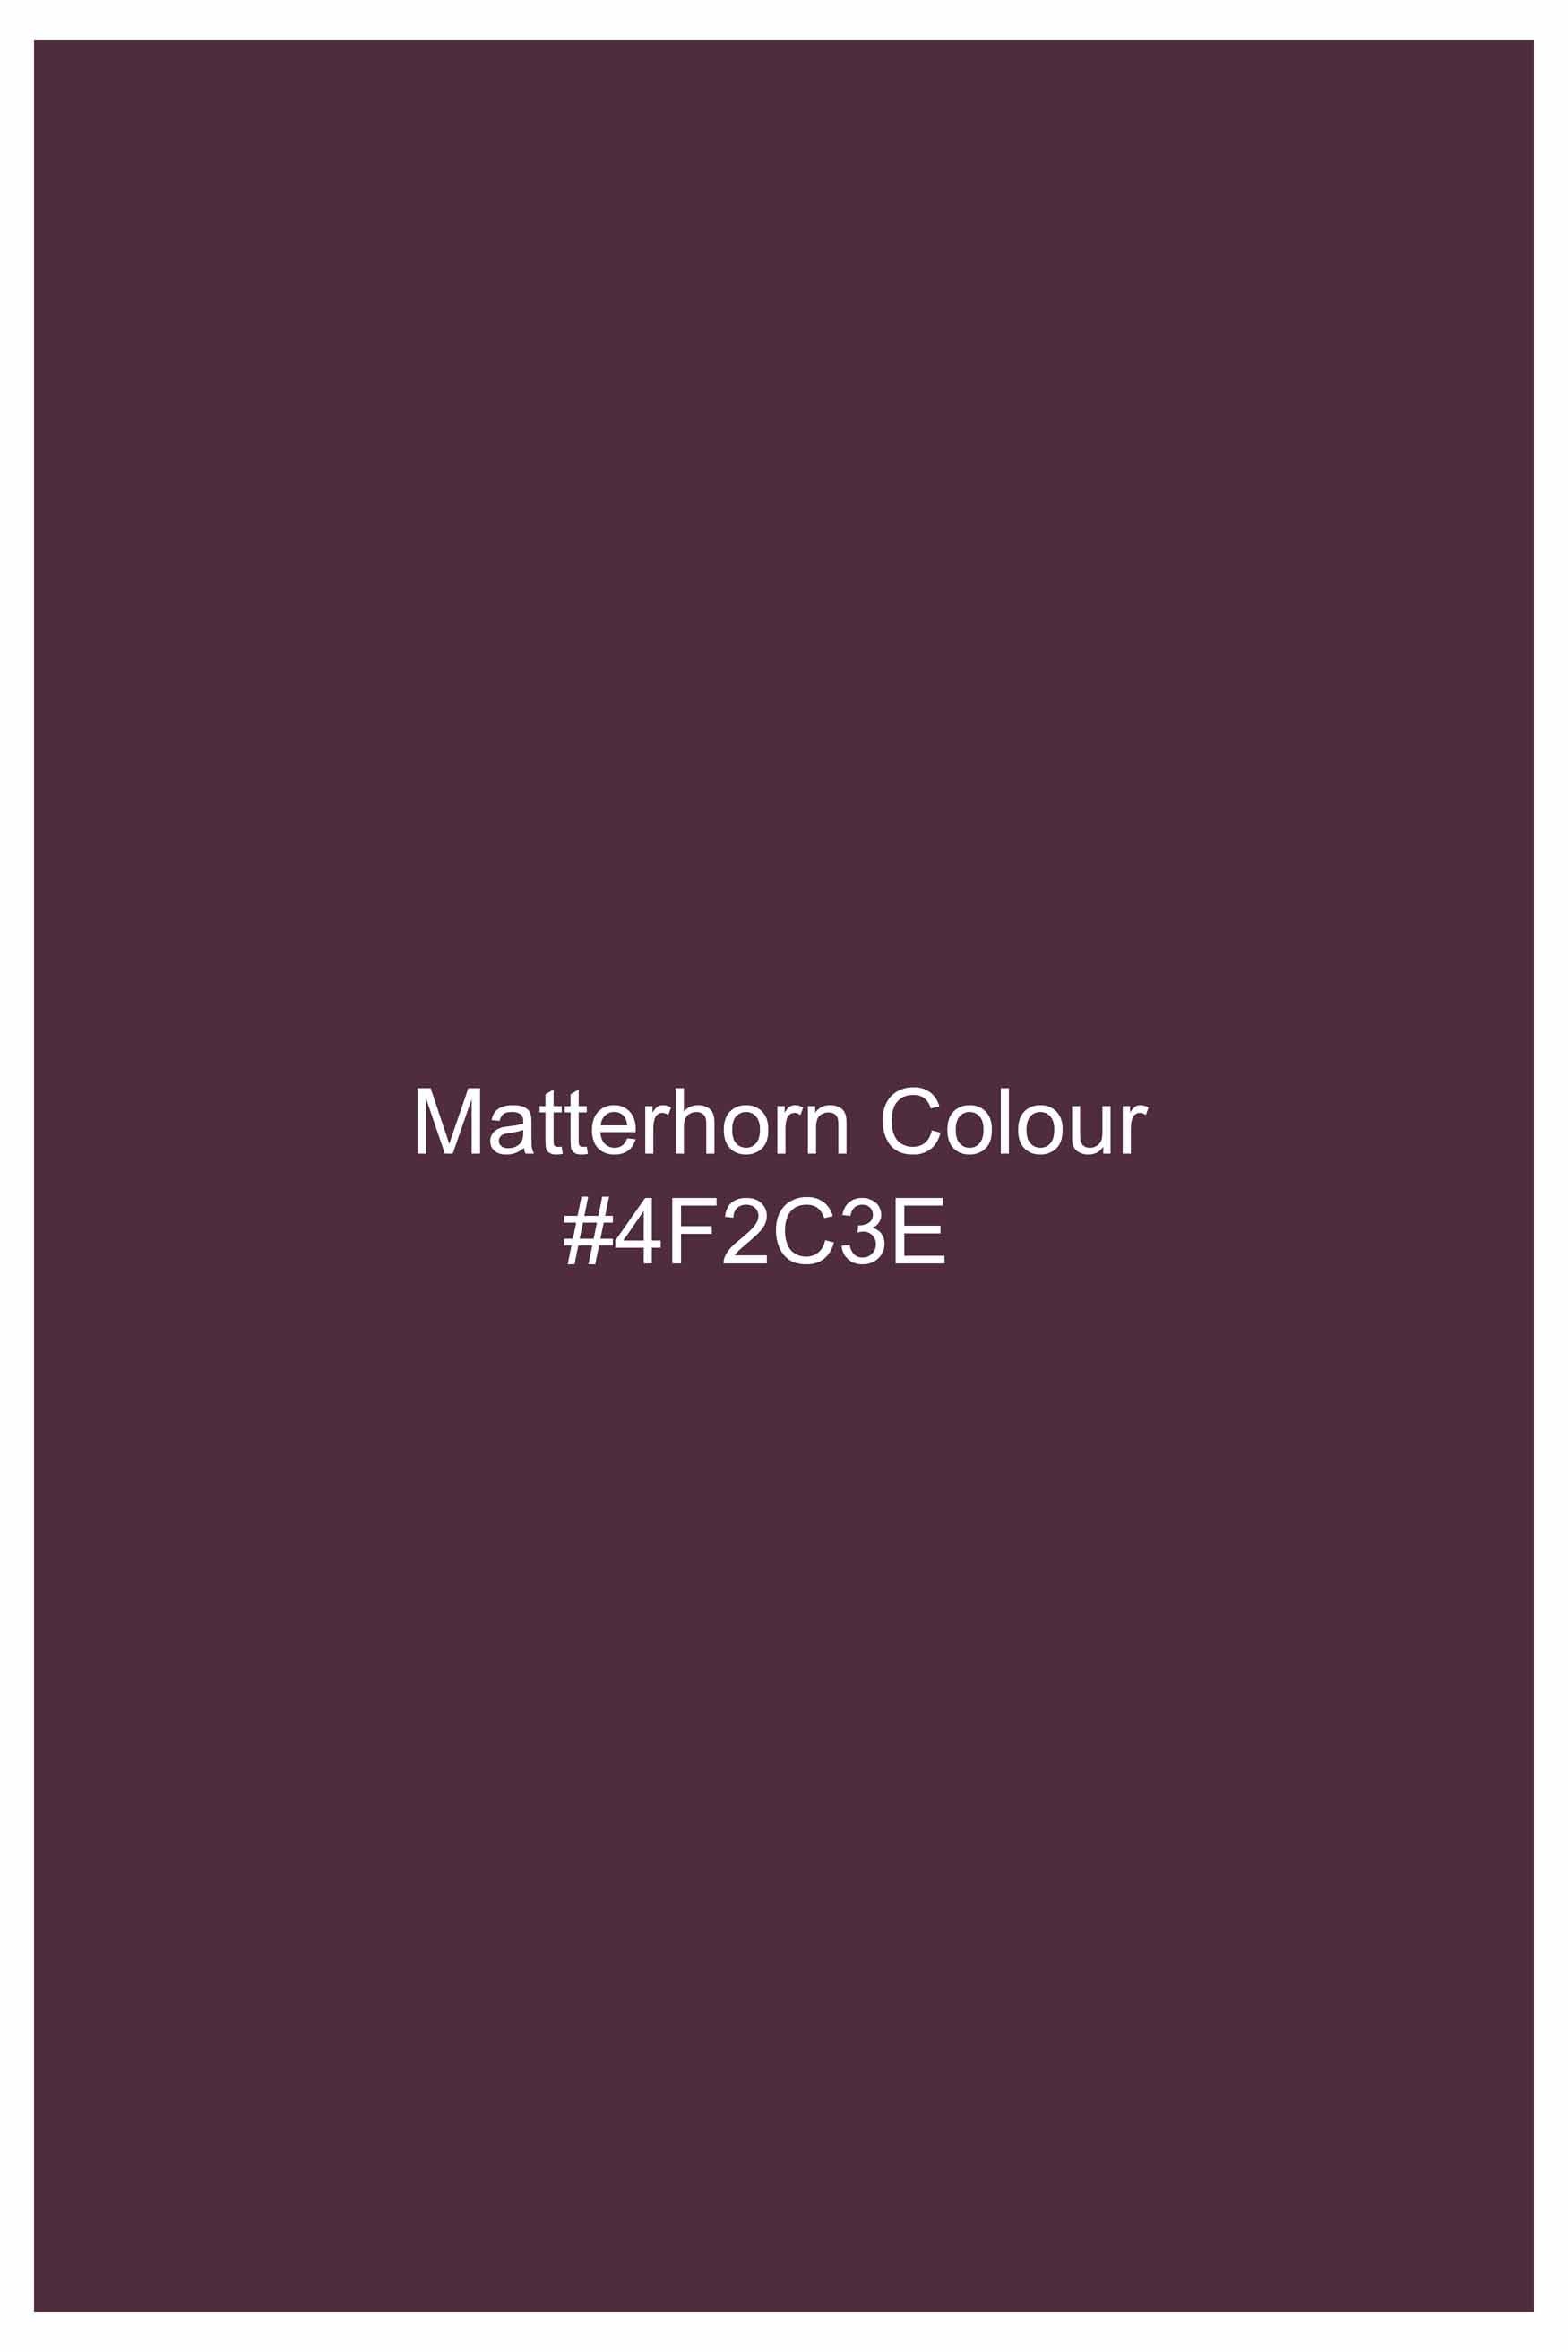 Matterhorn Maroon Subtle Sheen Super Soft Premium Cotton Mandarin Shirt